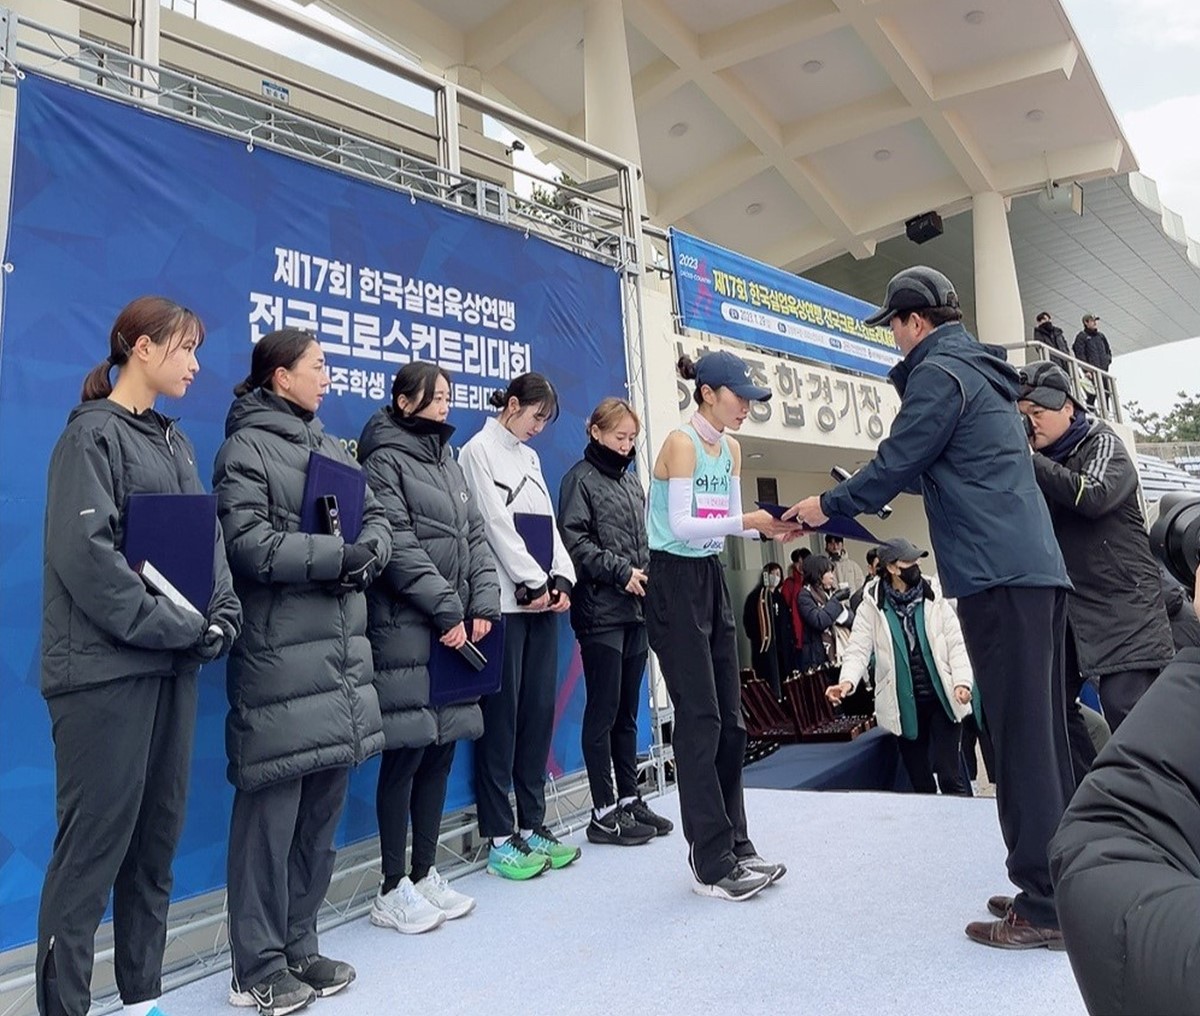 여수시청 김은미 선수가 지난달 29일 제주특별자치도에서 열린 제17회 서귀포 전국 크로스컨트리대회 8km 여자부에서 금메달을 획득했다.